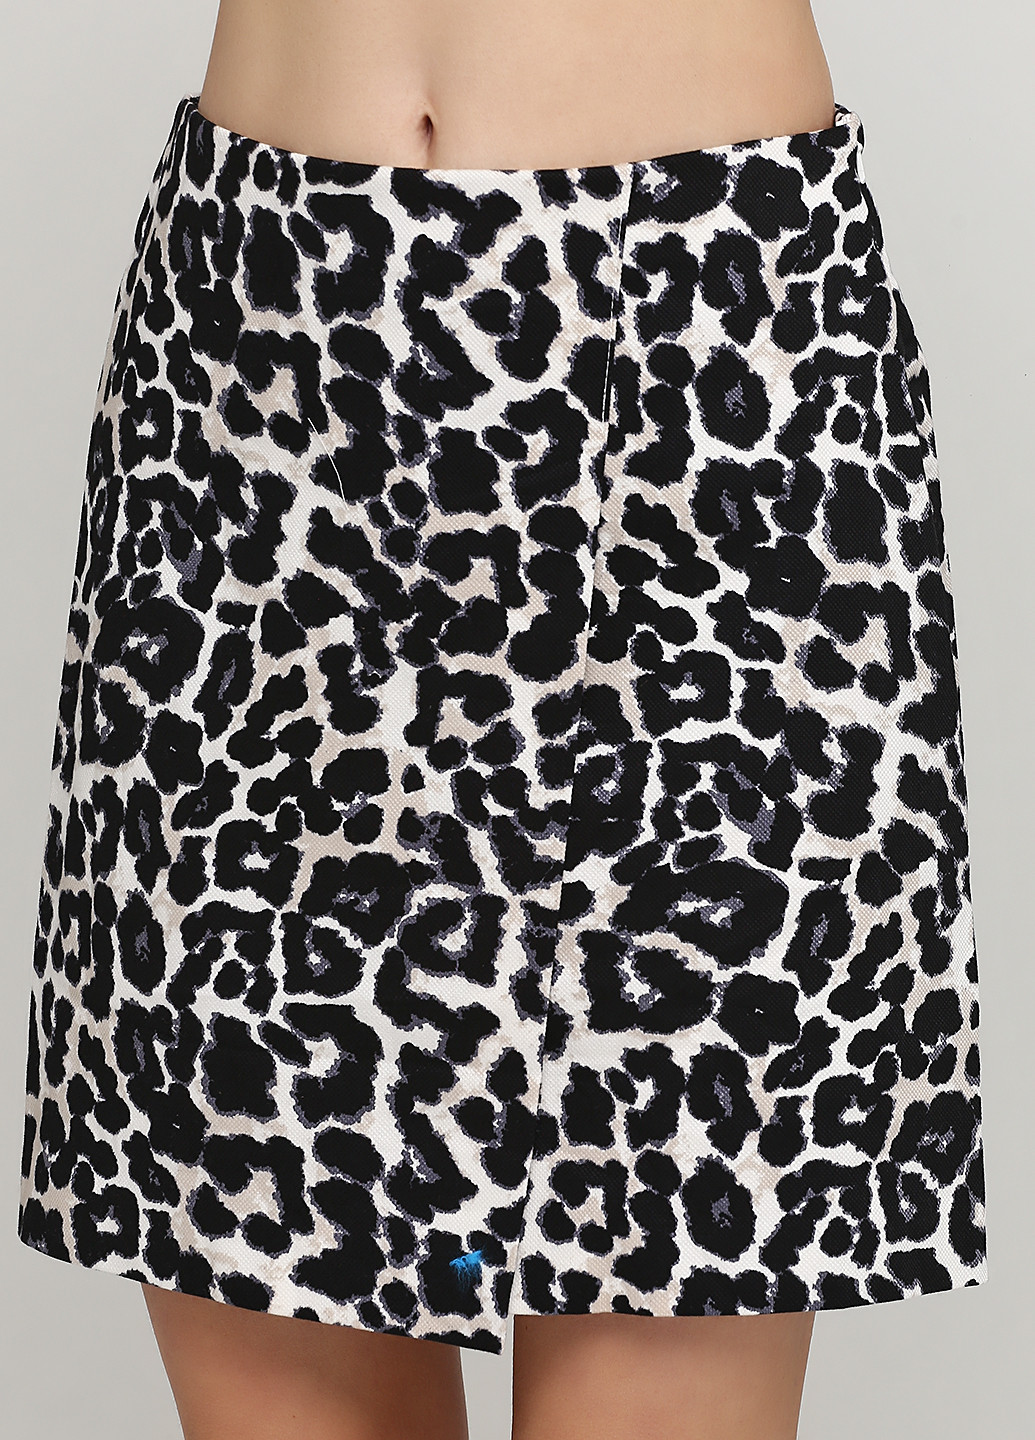 Разноцветная кэжуал леопардовая юбка New look. карандаш